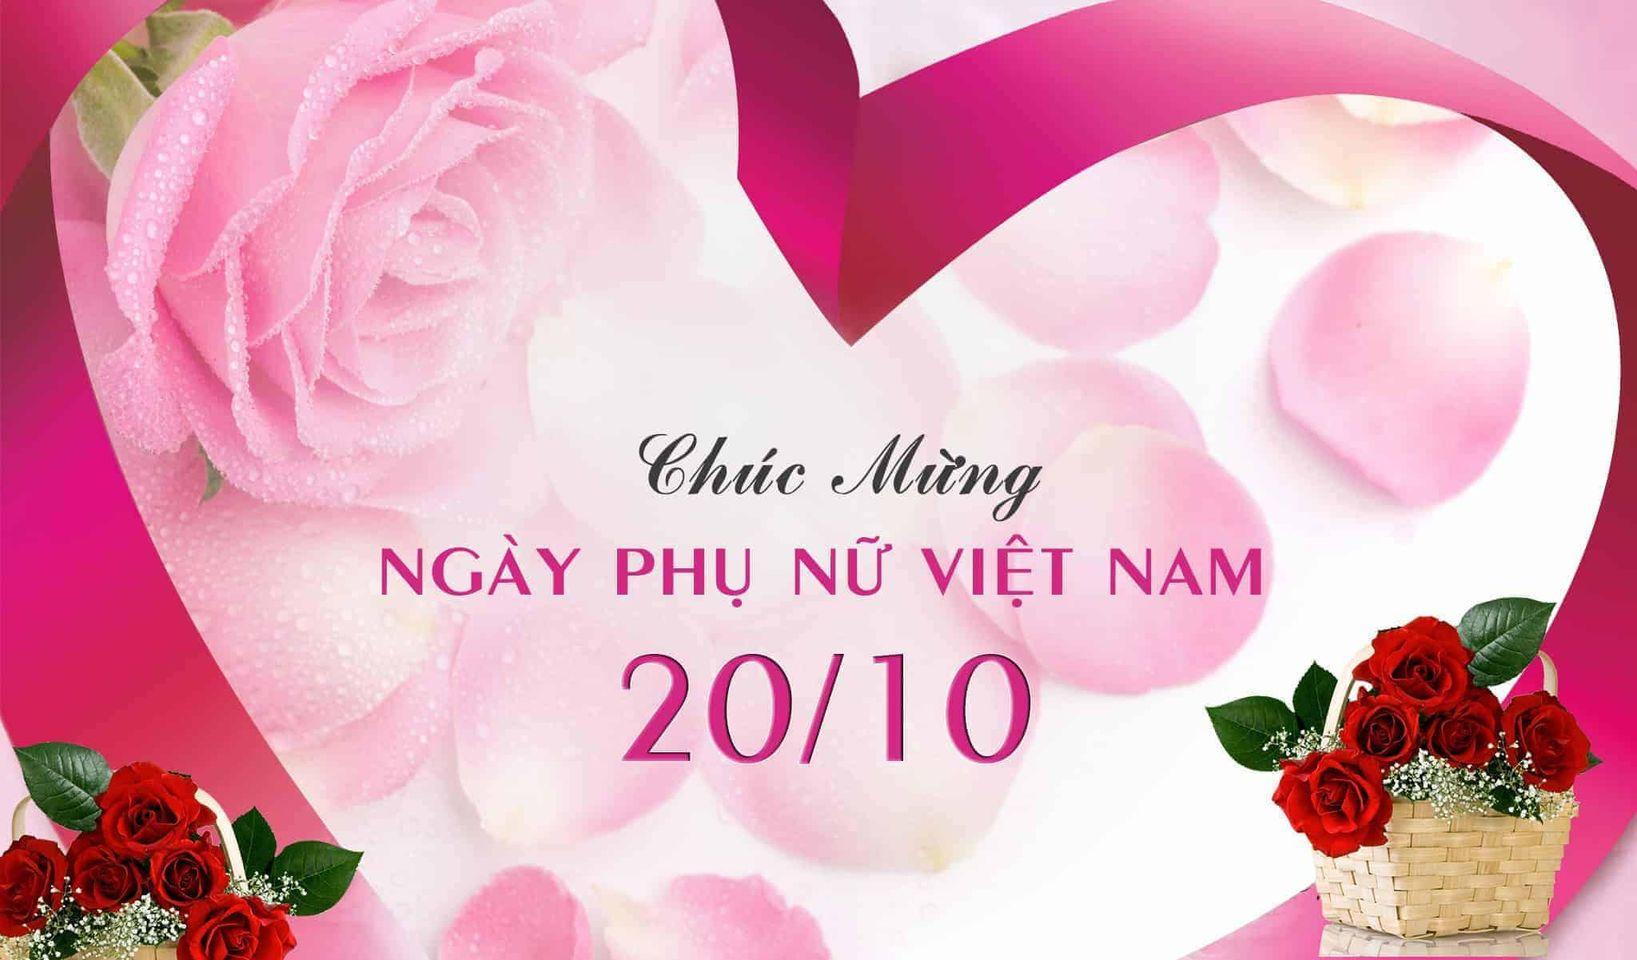 Hôm nay là Ngày Phụ Nữ Việt Nam 20/10, một ngày đặc biệt để tôn vinh và bày tỏ tình yêu thương dành cho phái đẹp của chúng ta. Hãy cùng xem những hình ảnh đẹp nhất trong ngày hôm nay để tưởng nhớ và ghi nhận lại ý nghĩa của ngày này!